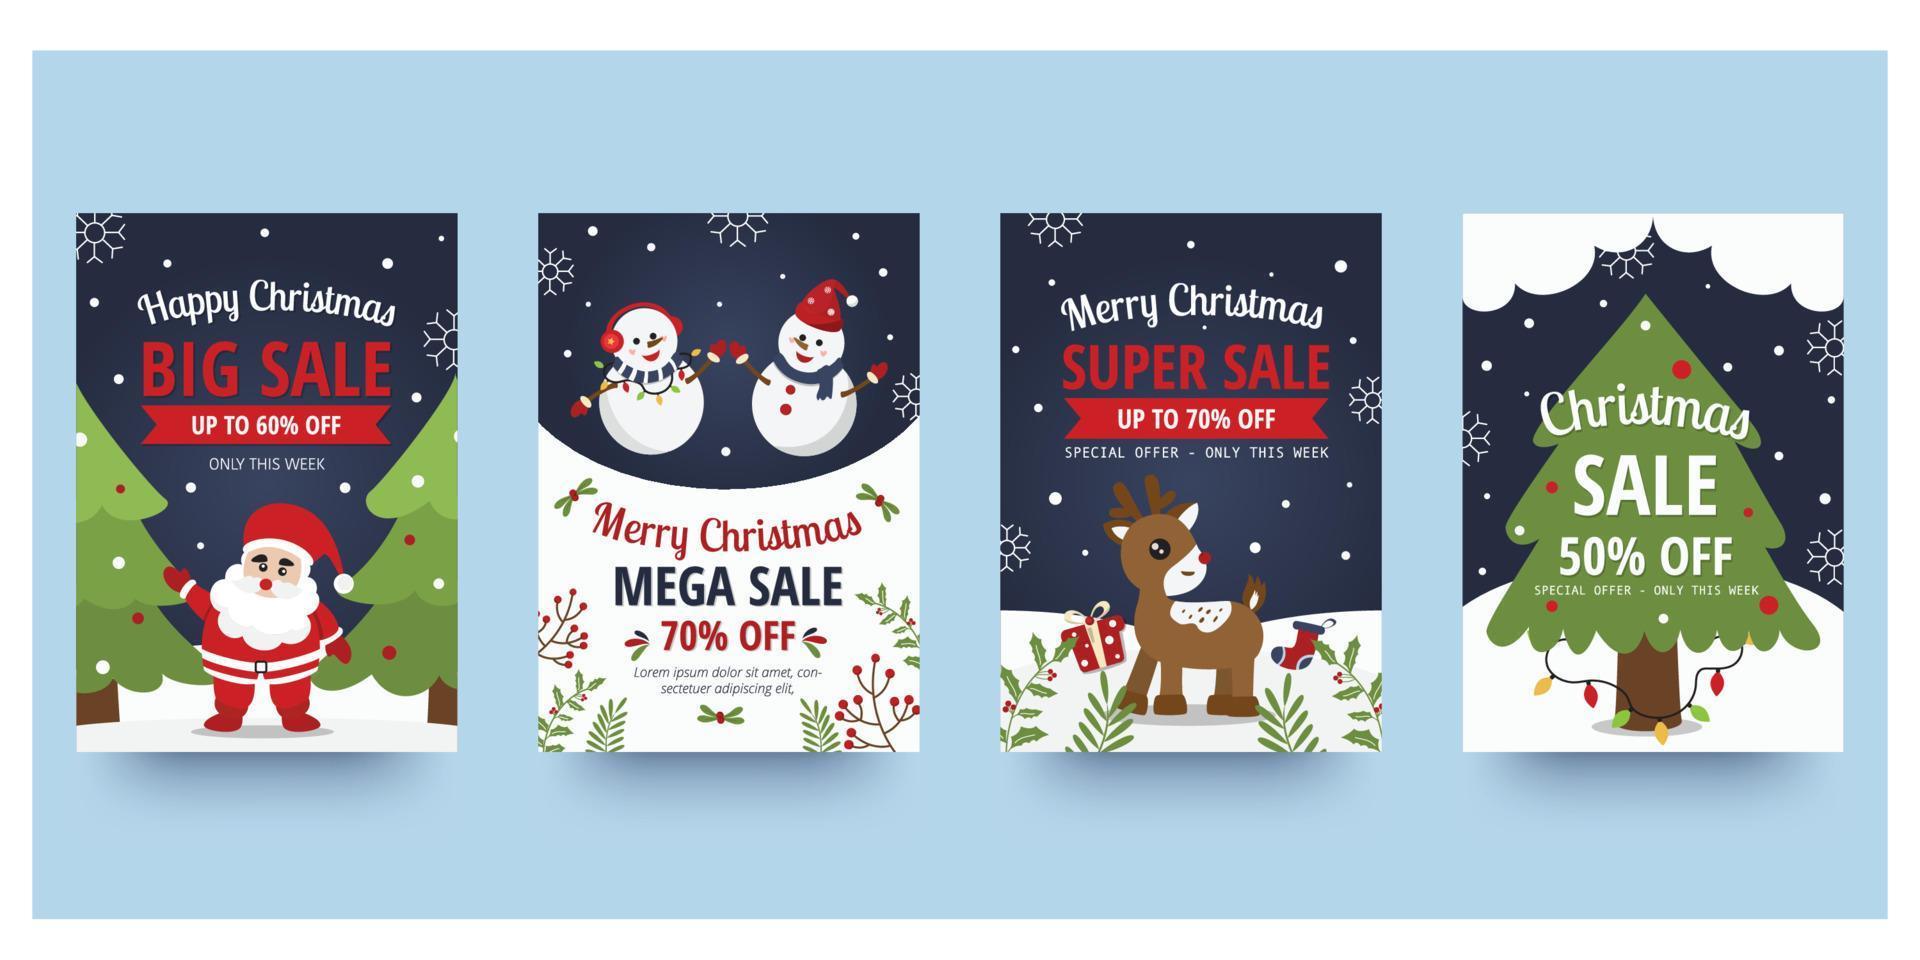 christmas sle flyer och affisch design med rea reklam text och färgglada jul element. vektor illustration.